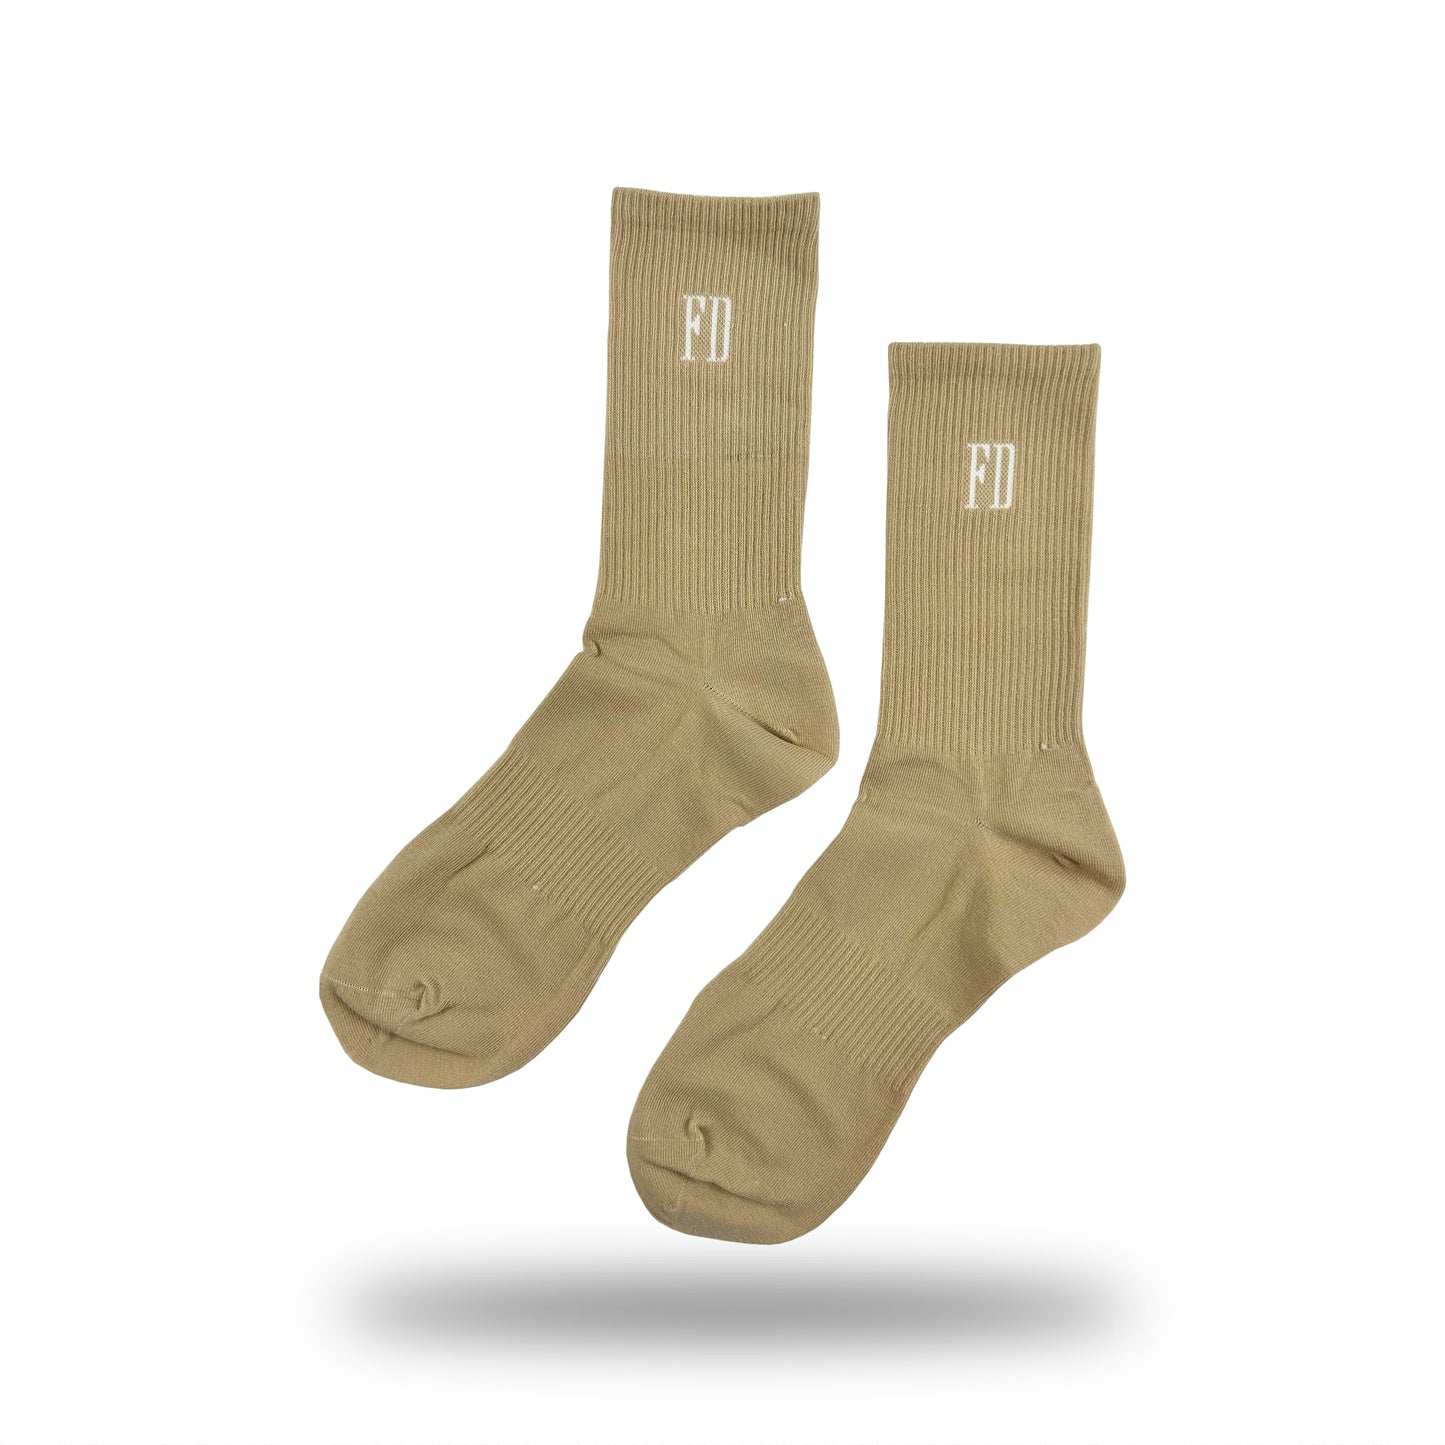 FD Socks - Tan